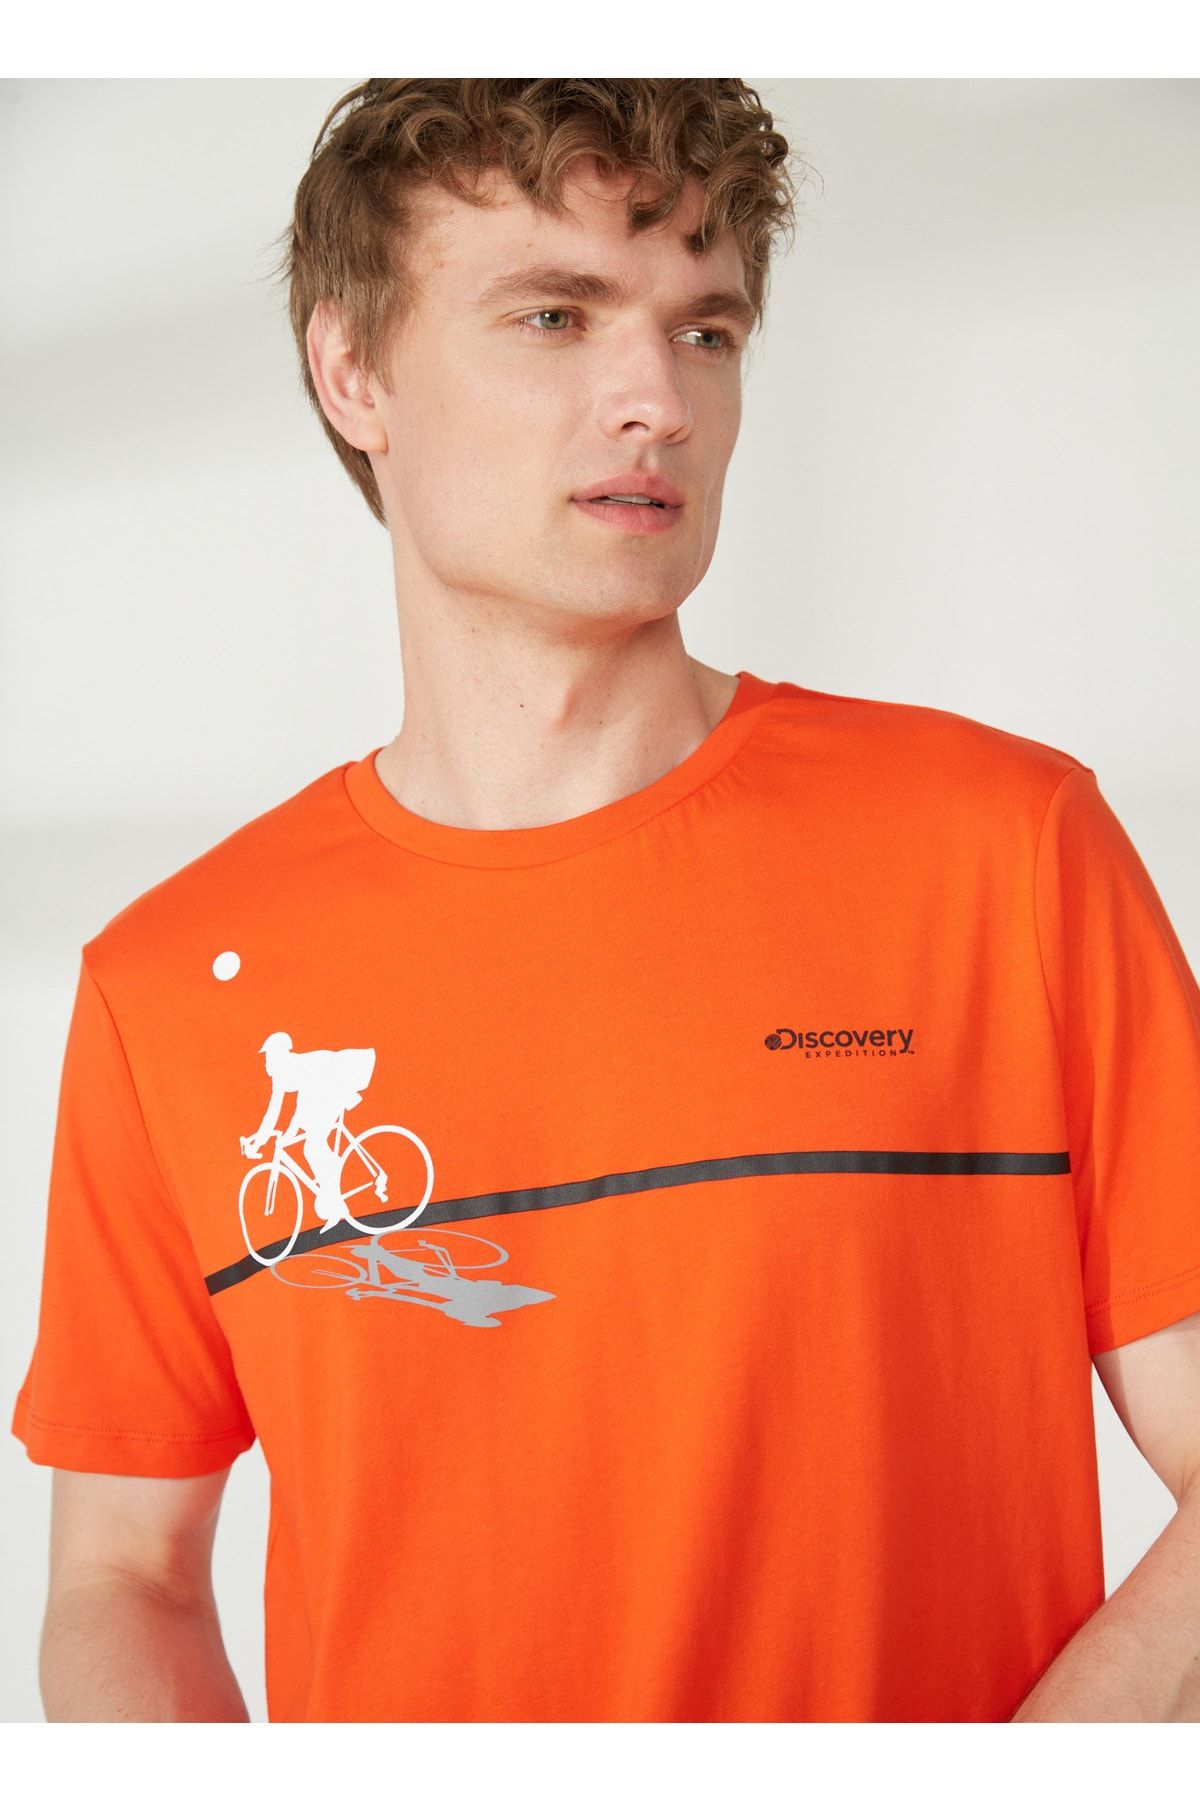 Discovery Expedition Discovery Expedition Bisiklet Yaka Baskılı Turuncu Erkek T-Shirt BENJAMIN